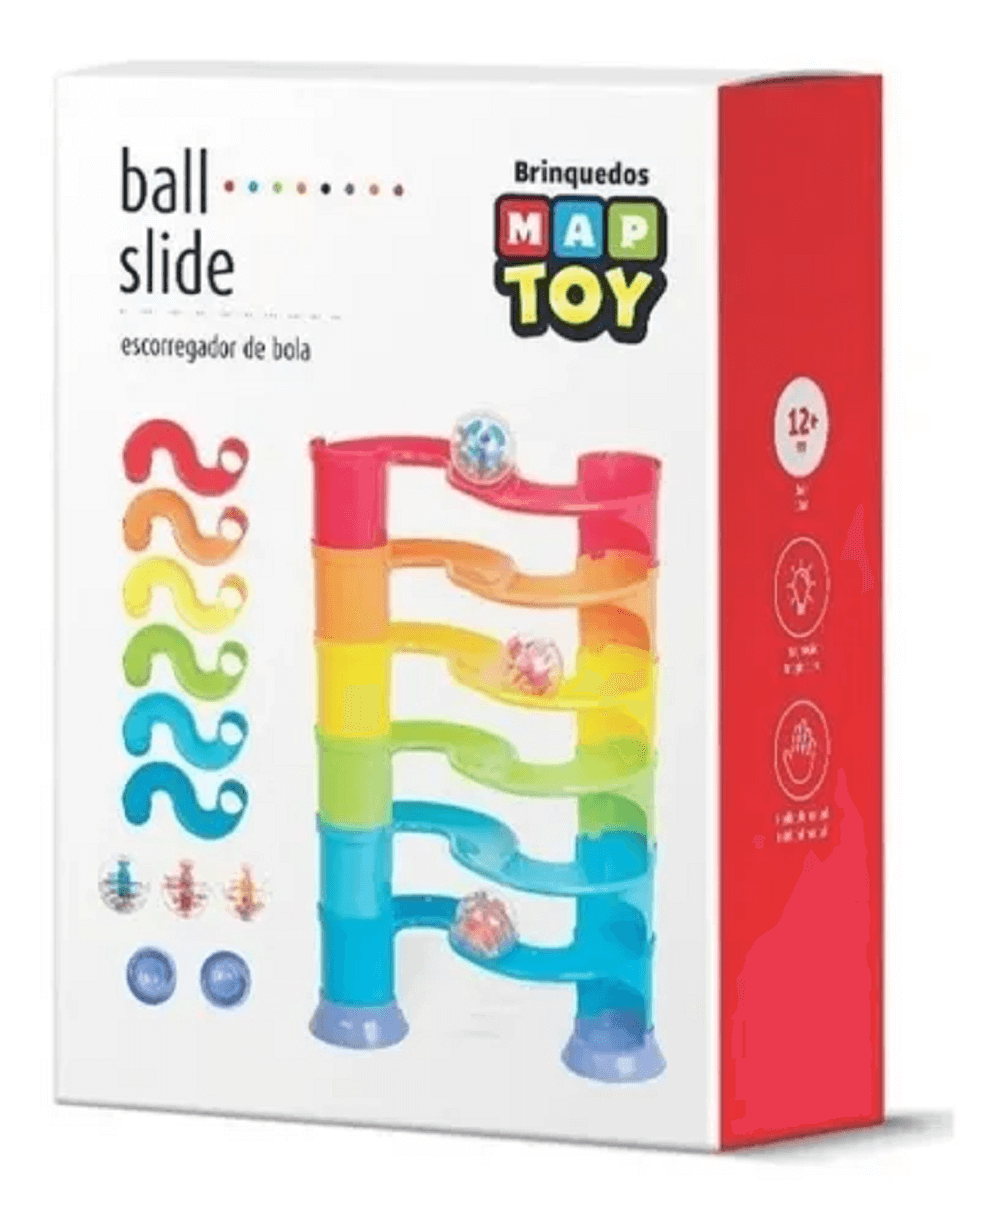 Ball Slide - Escorregador de Bola 982-0 - Maptoy